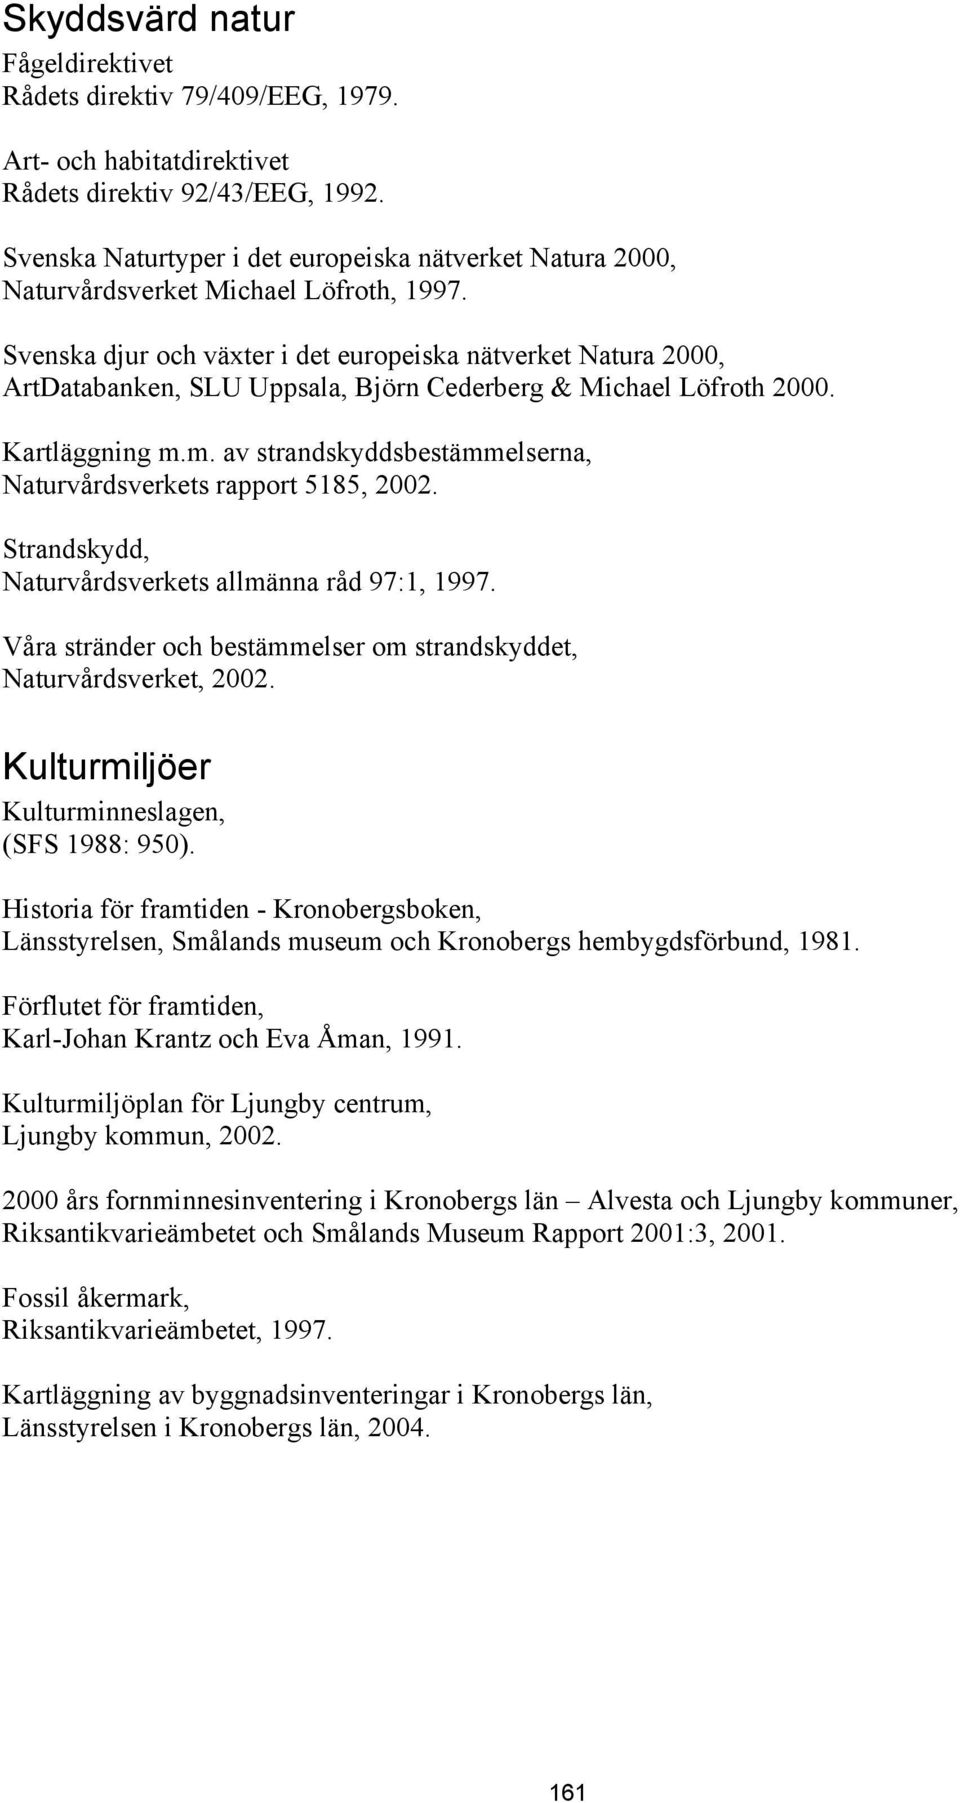 Svenska djur och växter i det europeiska nätverket Natura 2000, ArtDatabanken, SLU Uppsala, Björn Cederberg & Michael Löfroth 2000. Kartläggning m.